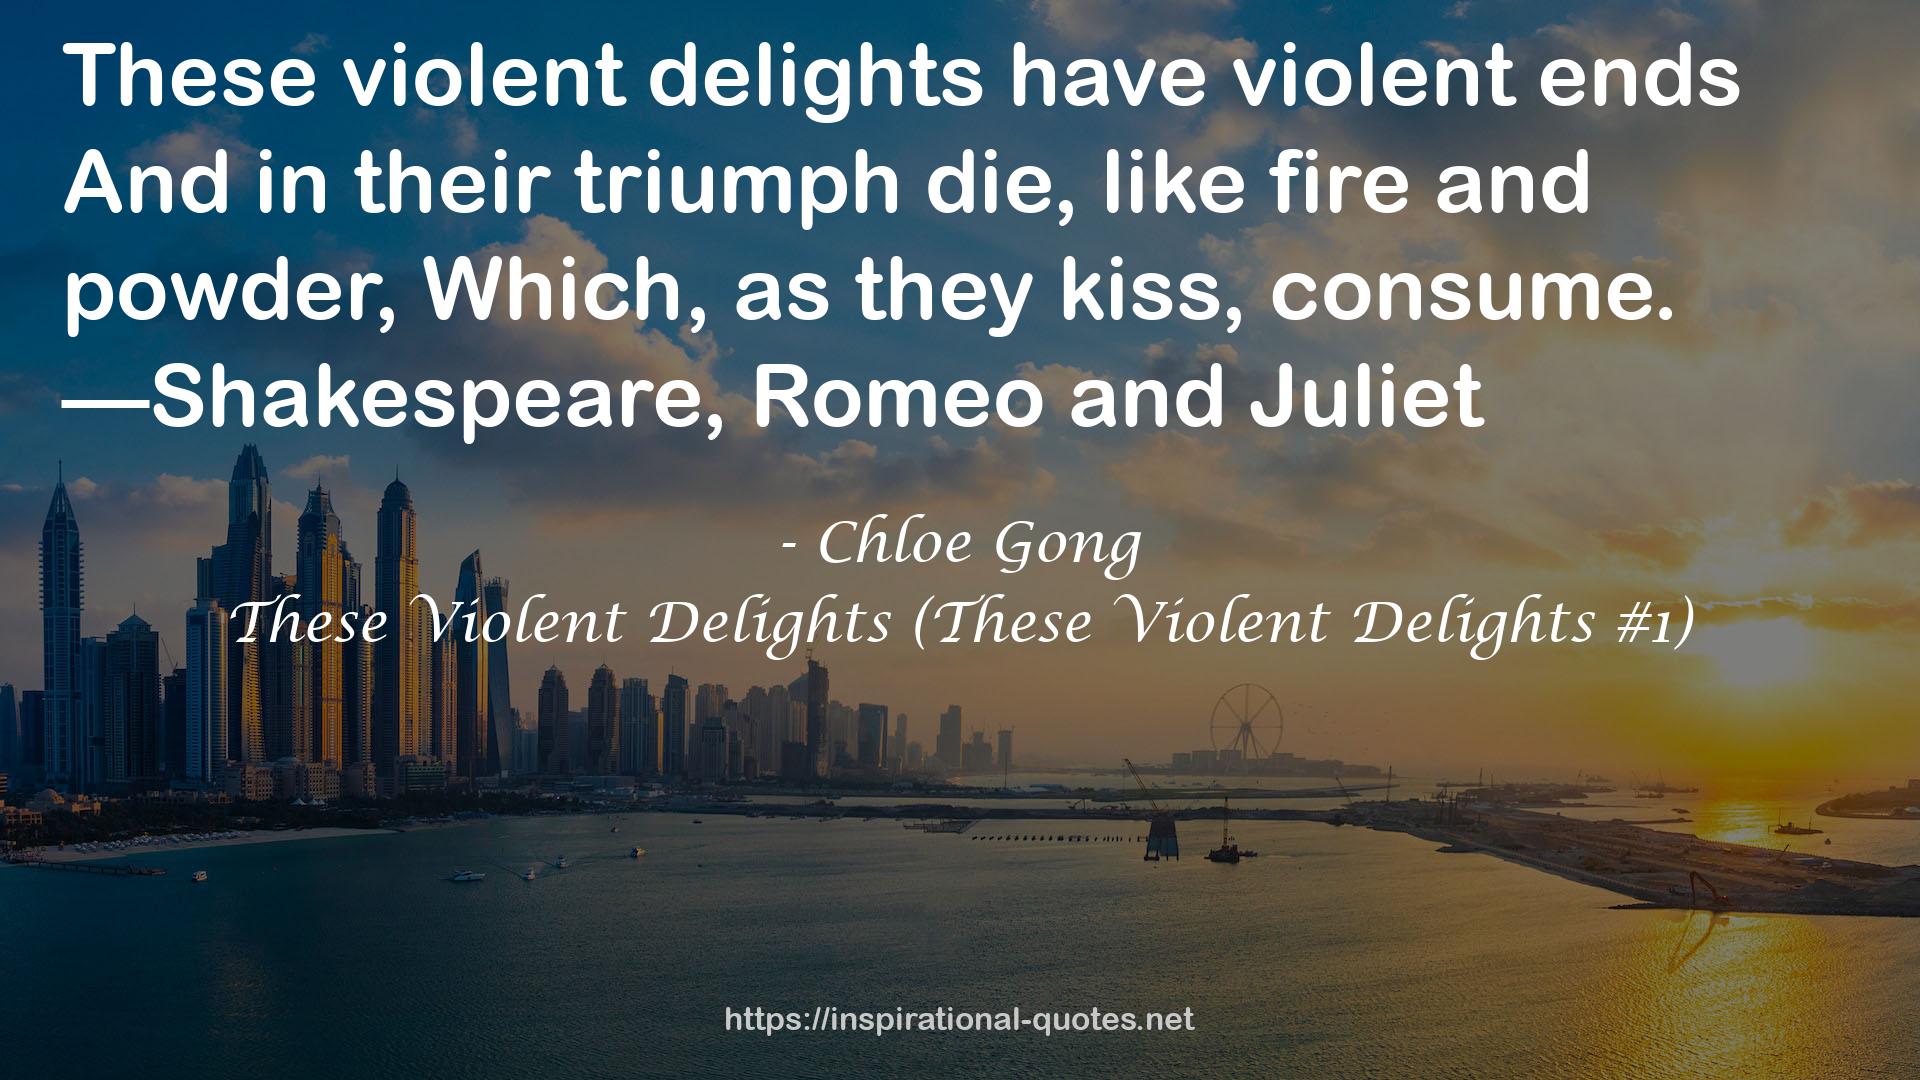 These Violent Delights (These Violent Delights #1) QUOTES